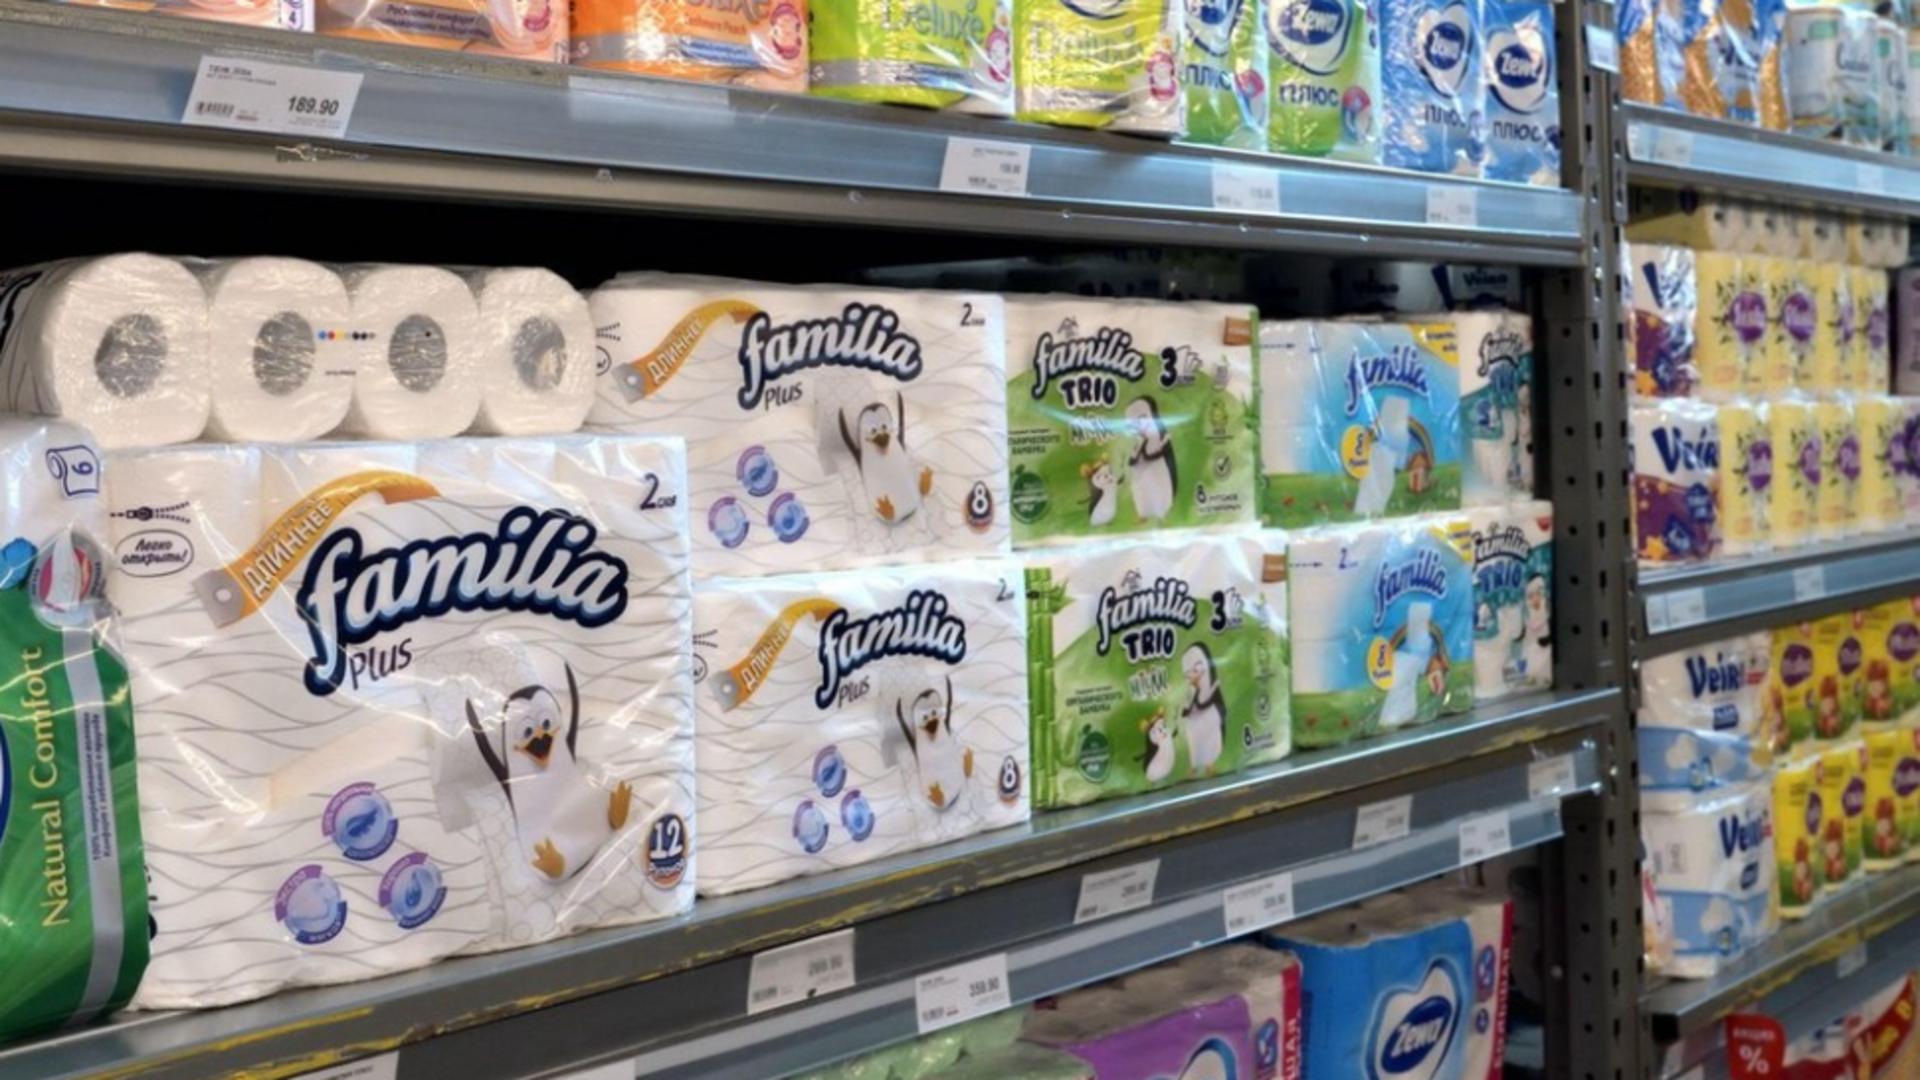 Unele supermarketuri ”ascund” produsele esențiale dintr-o strategie de marketing. Foto: Profimedia